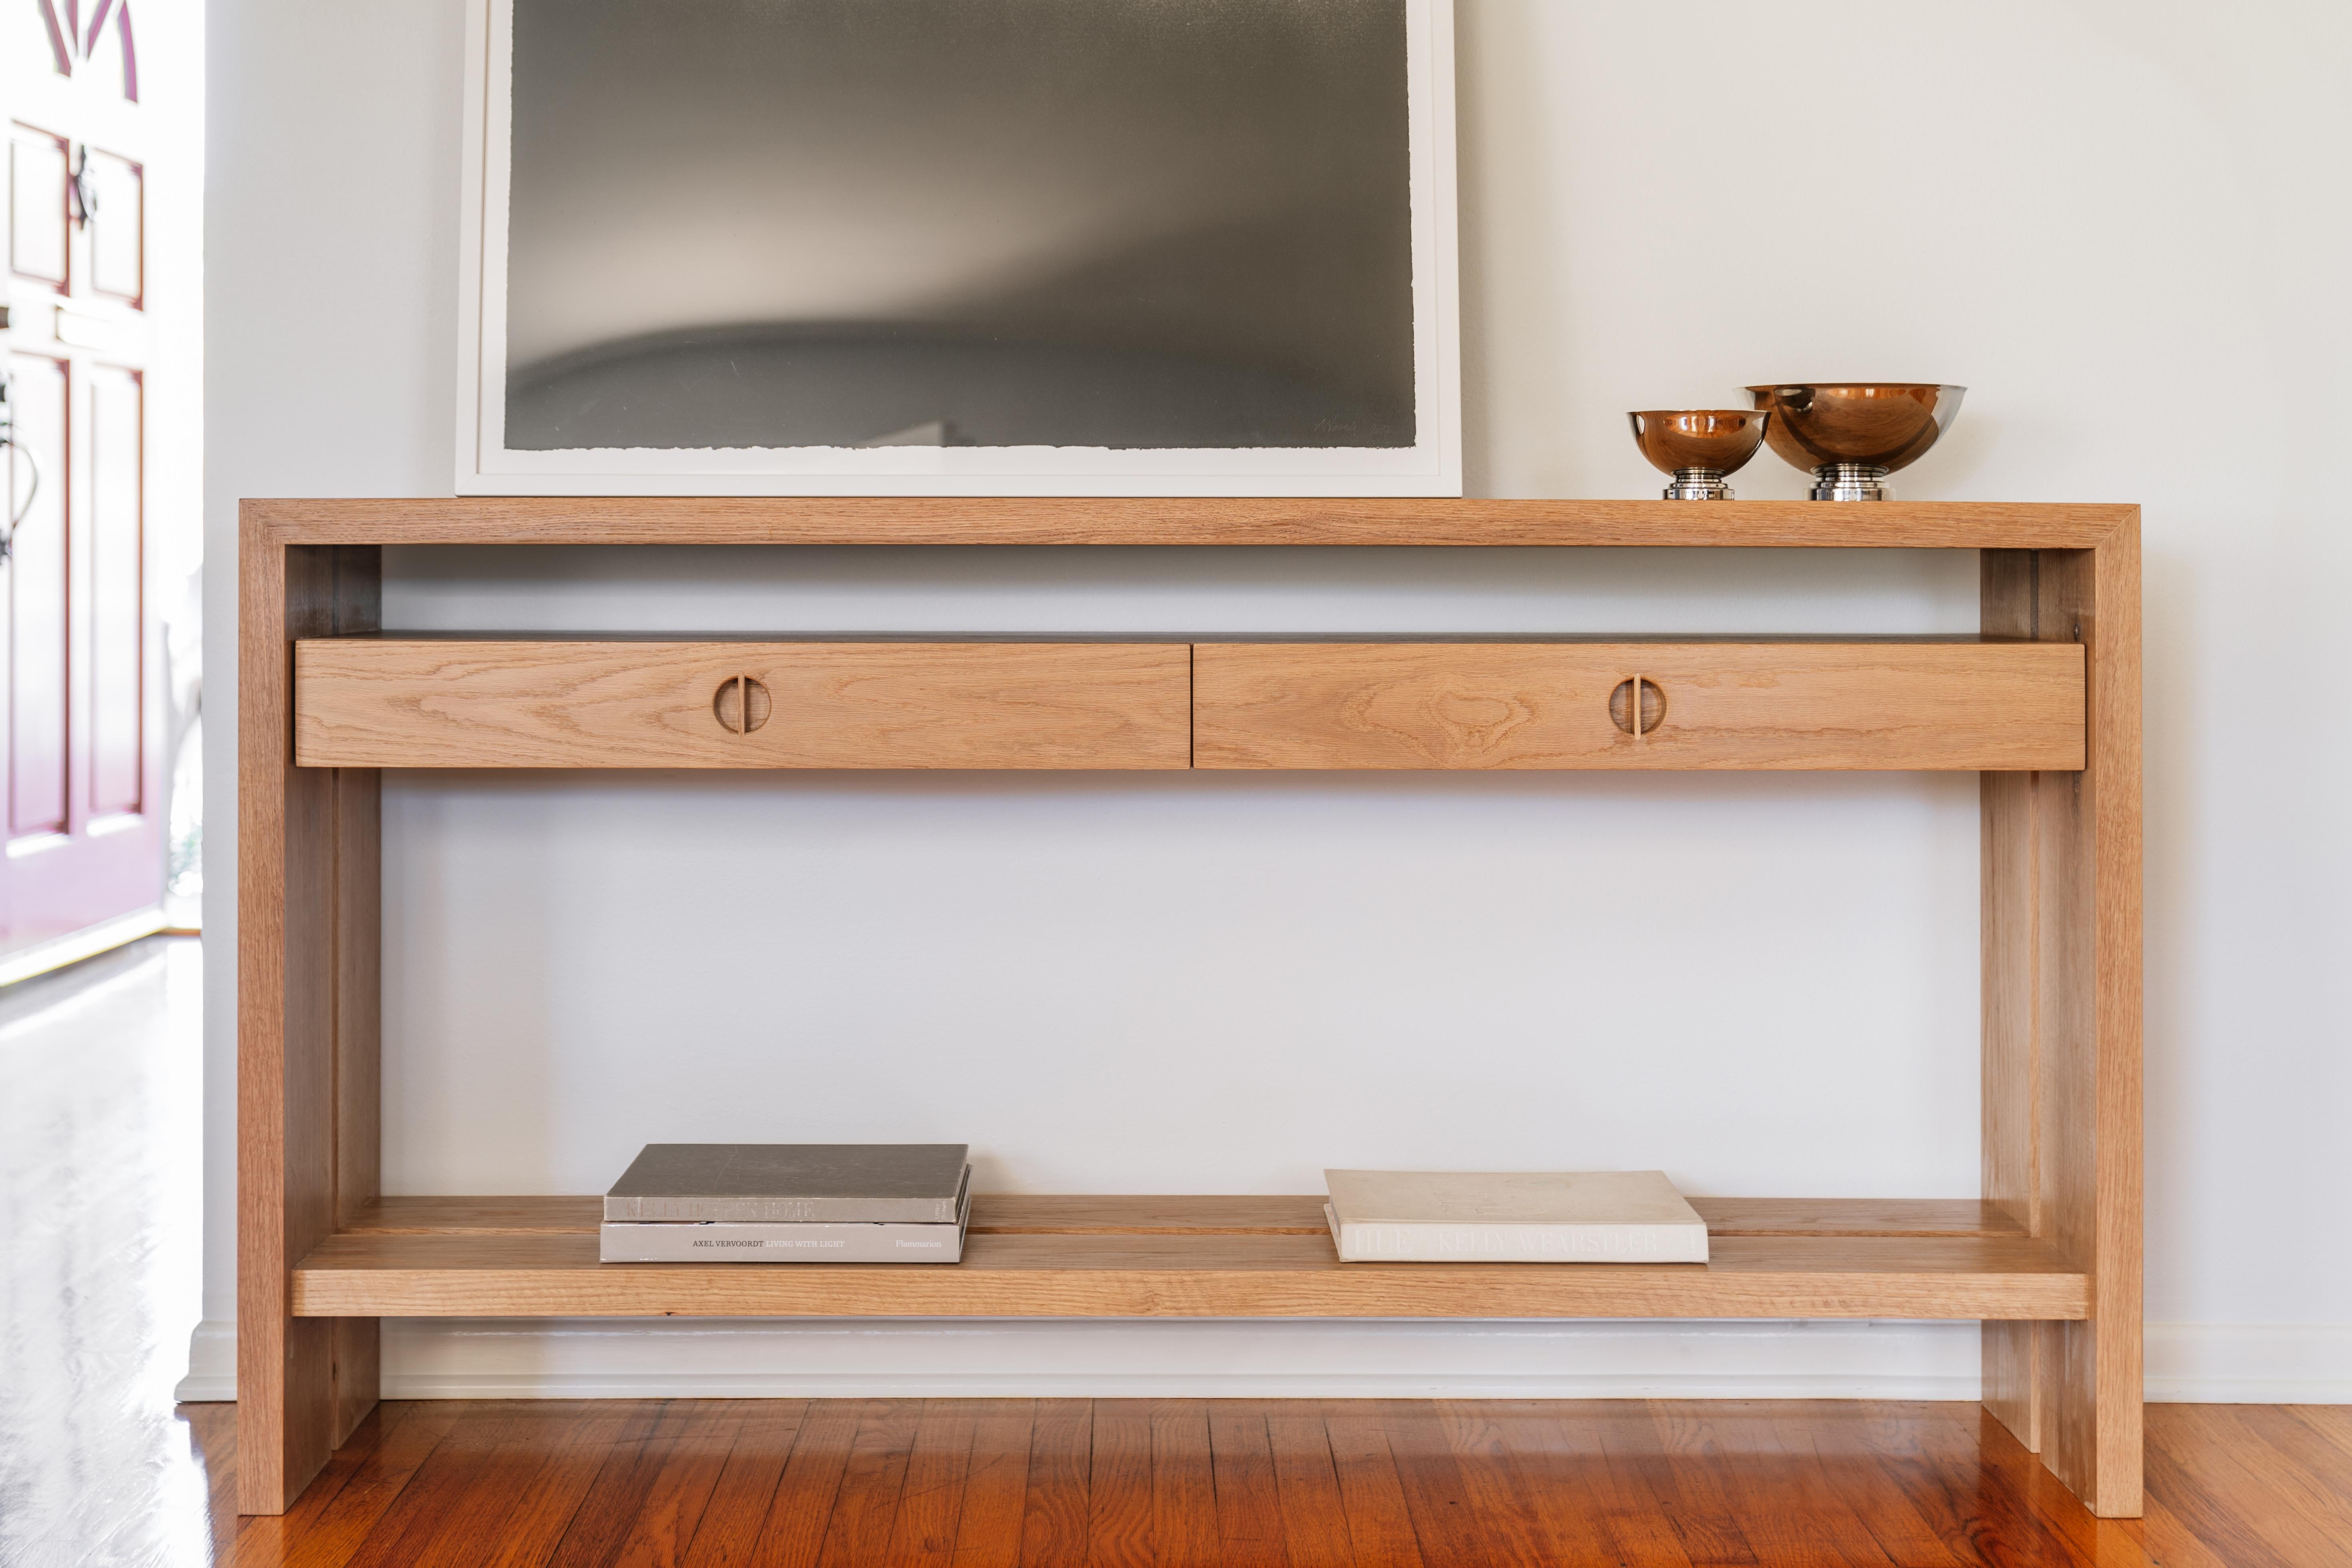 Cette table console en bois personnalisée est fabriquée à la main aux États-Unis avec une construction entièrement en bois dur. Il présente un design moderne avec un corps en chêne blanc massif et une incrustation minimaliste en noyer. Les tiroirs